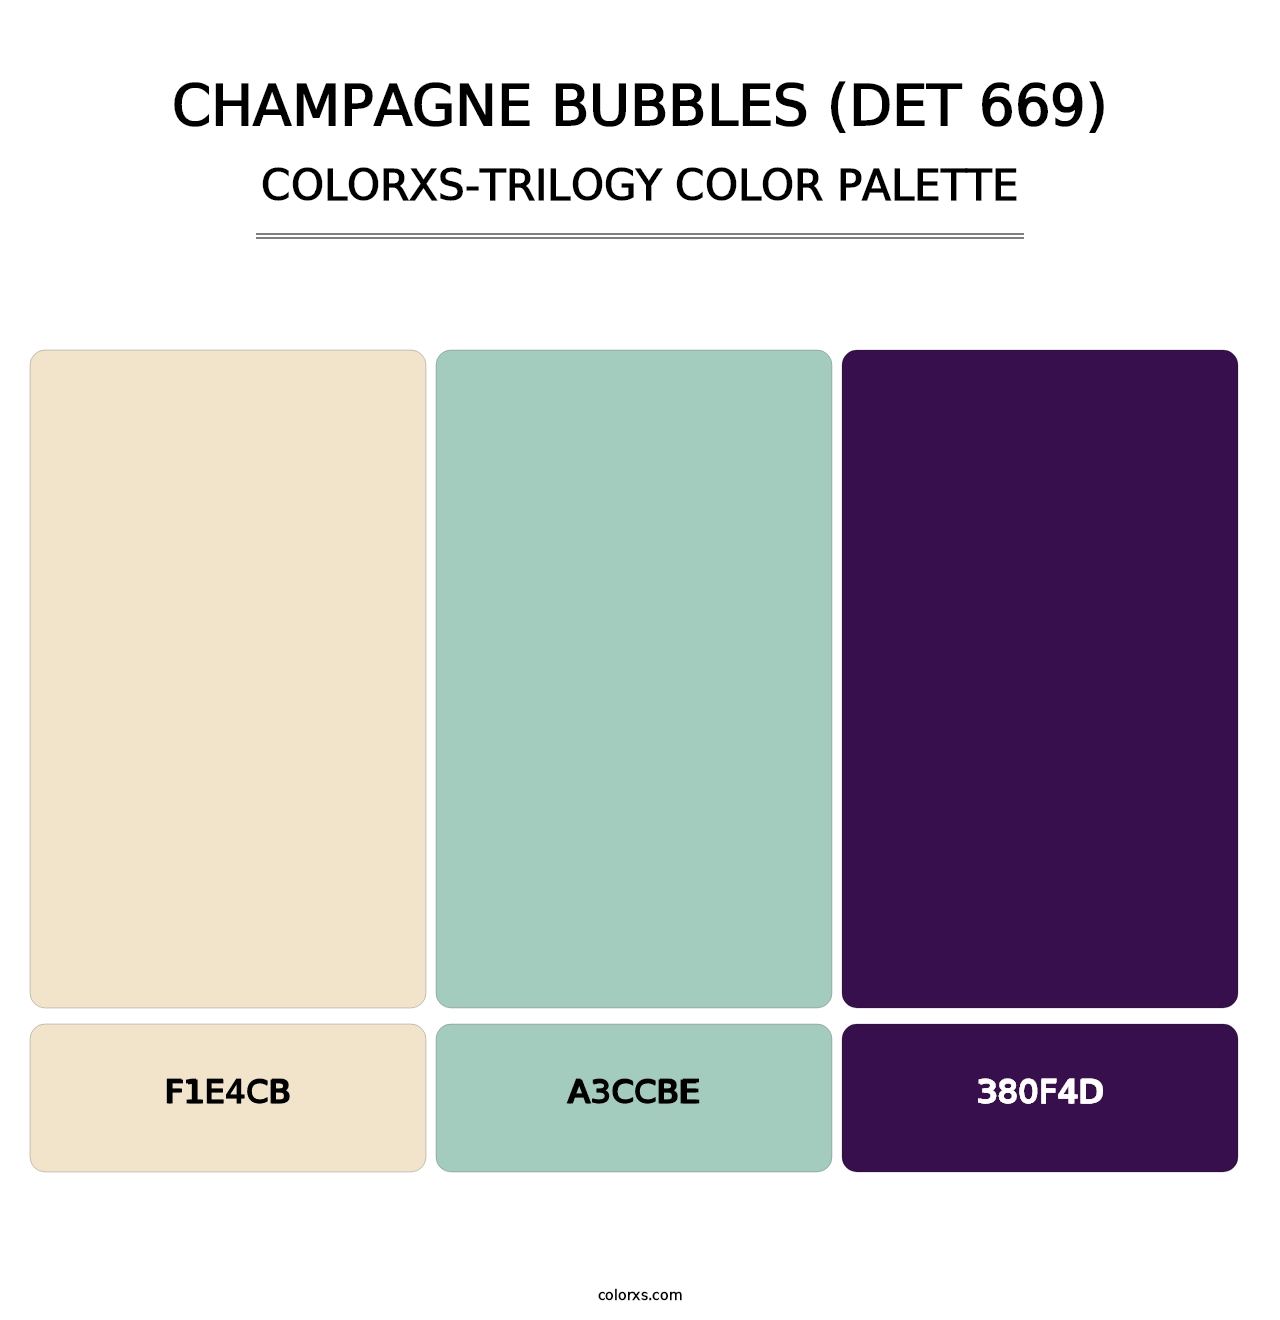 Champagne Bubbles (DET 669) - Colorxs Trilogy Palette